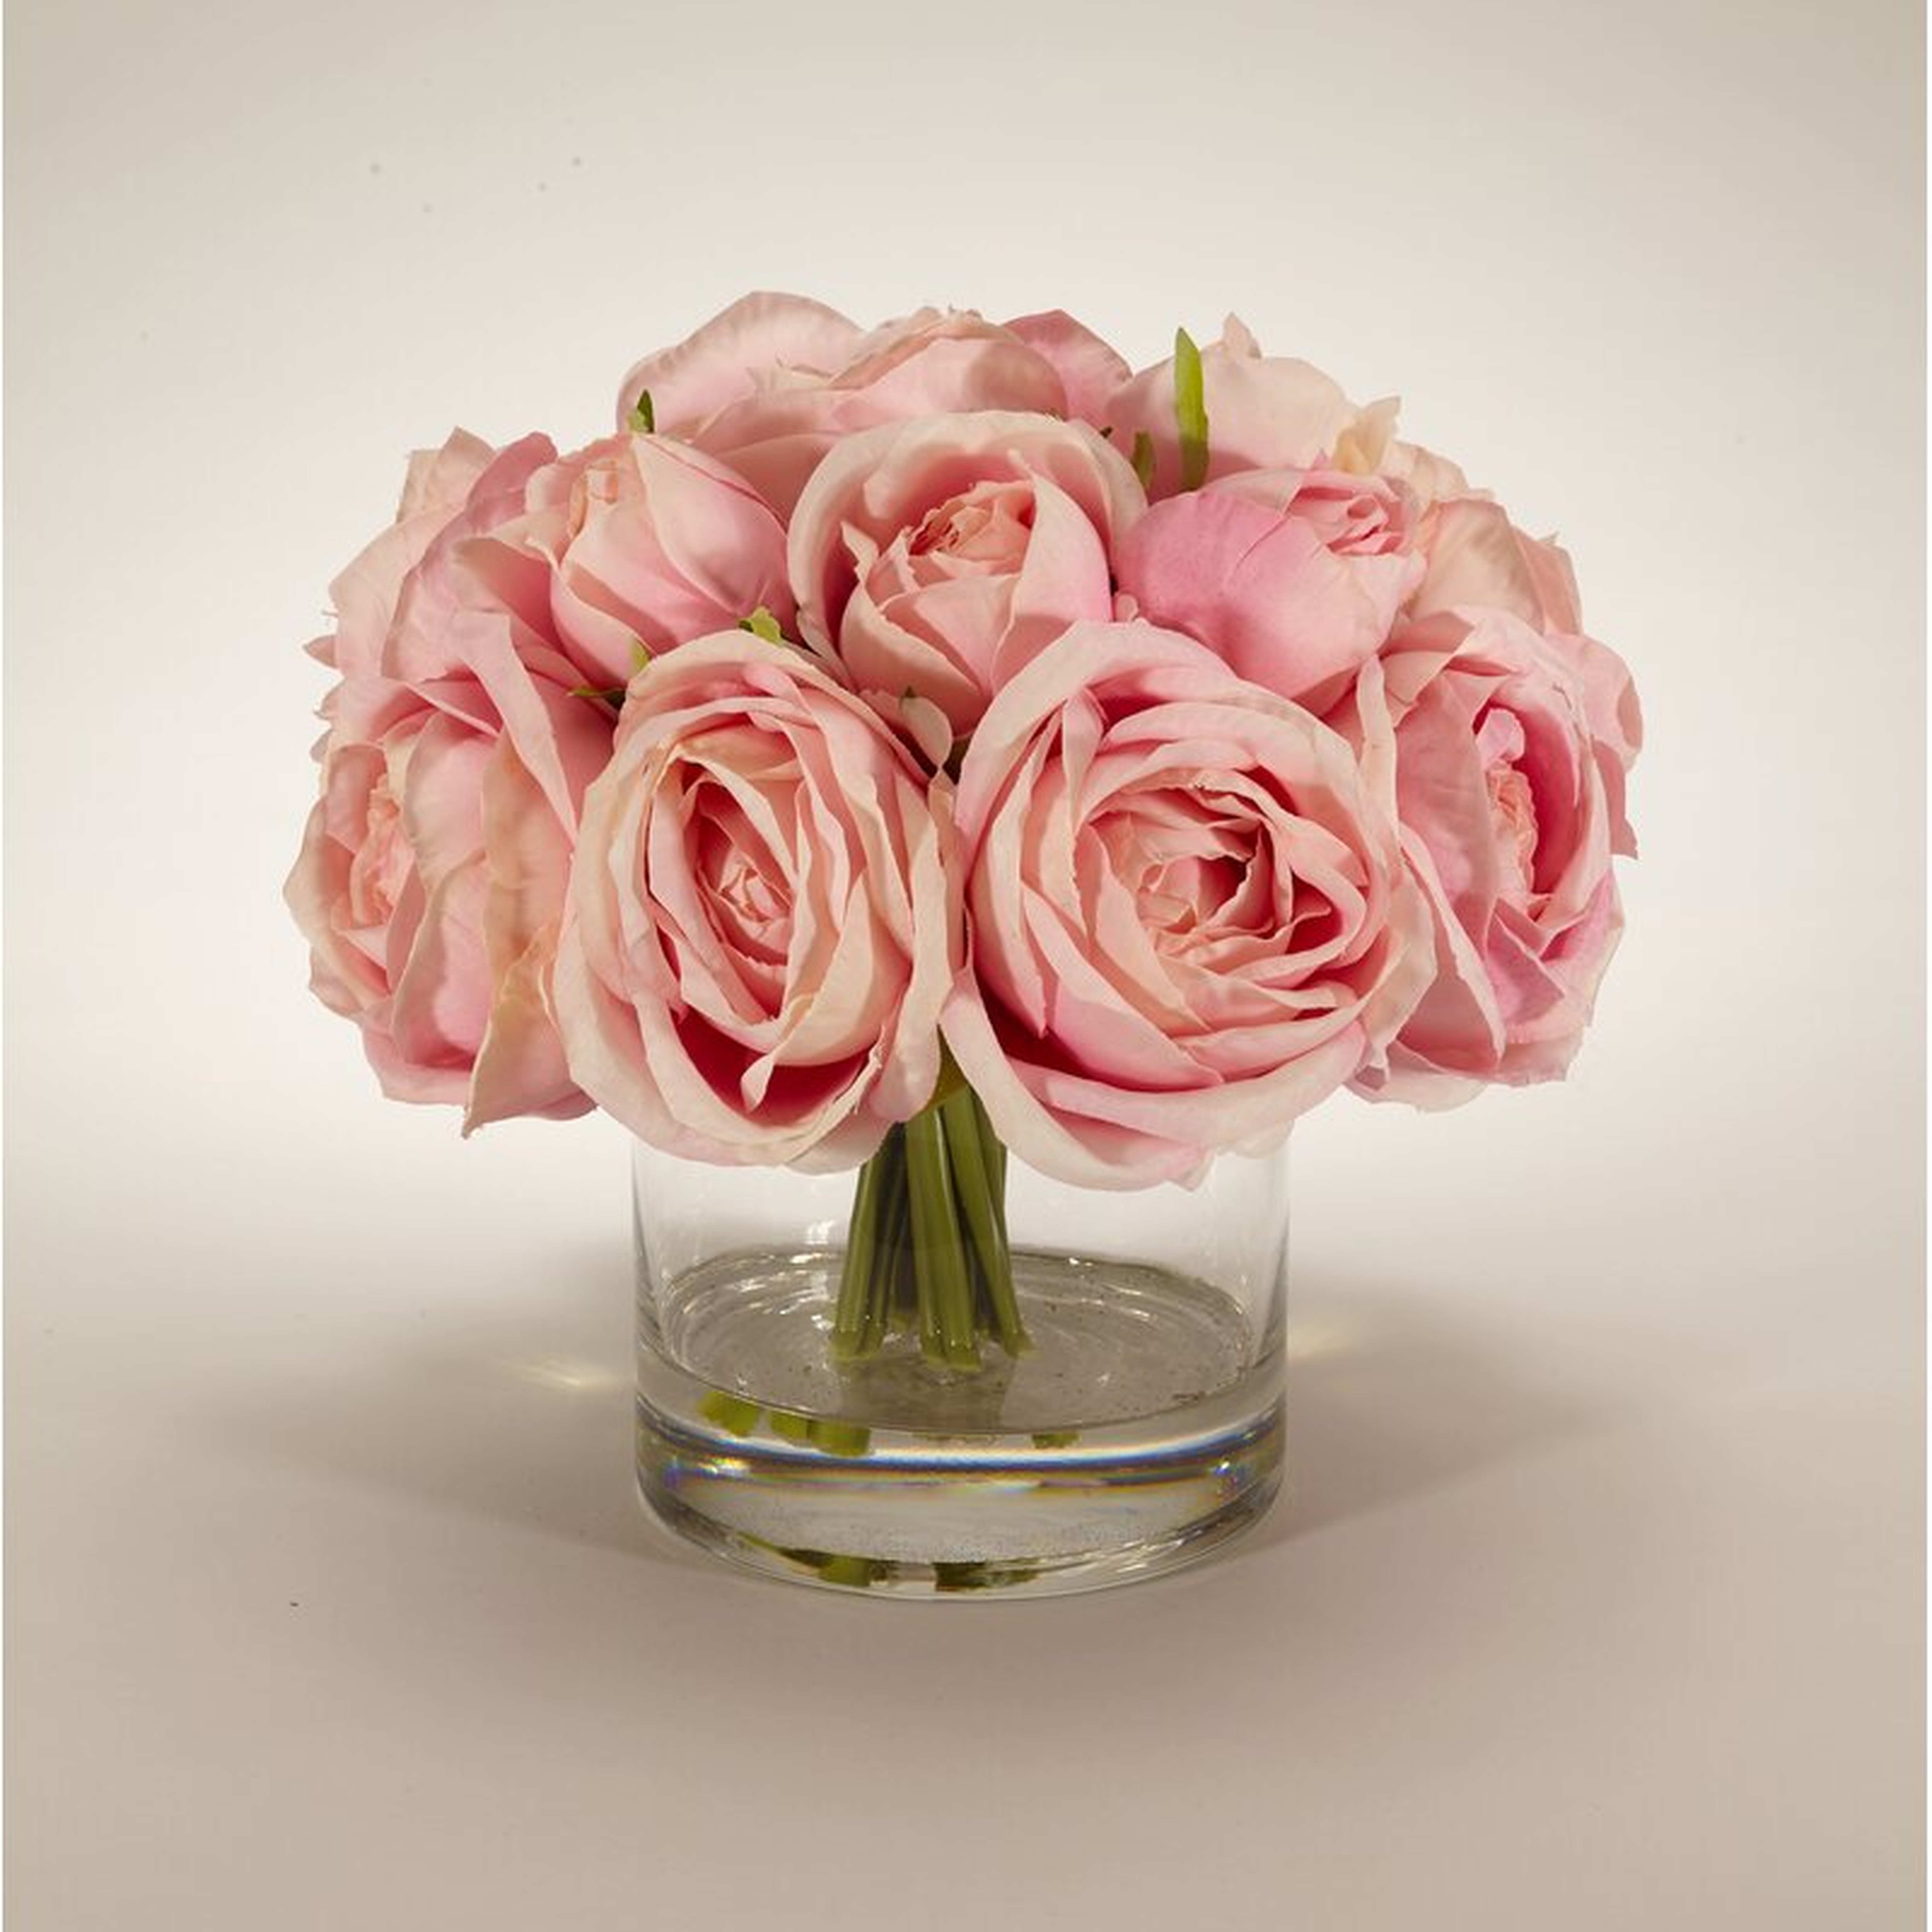 Rose Floral Arrangement in Decorative Vase Flower Color: Pink - Perigold